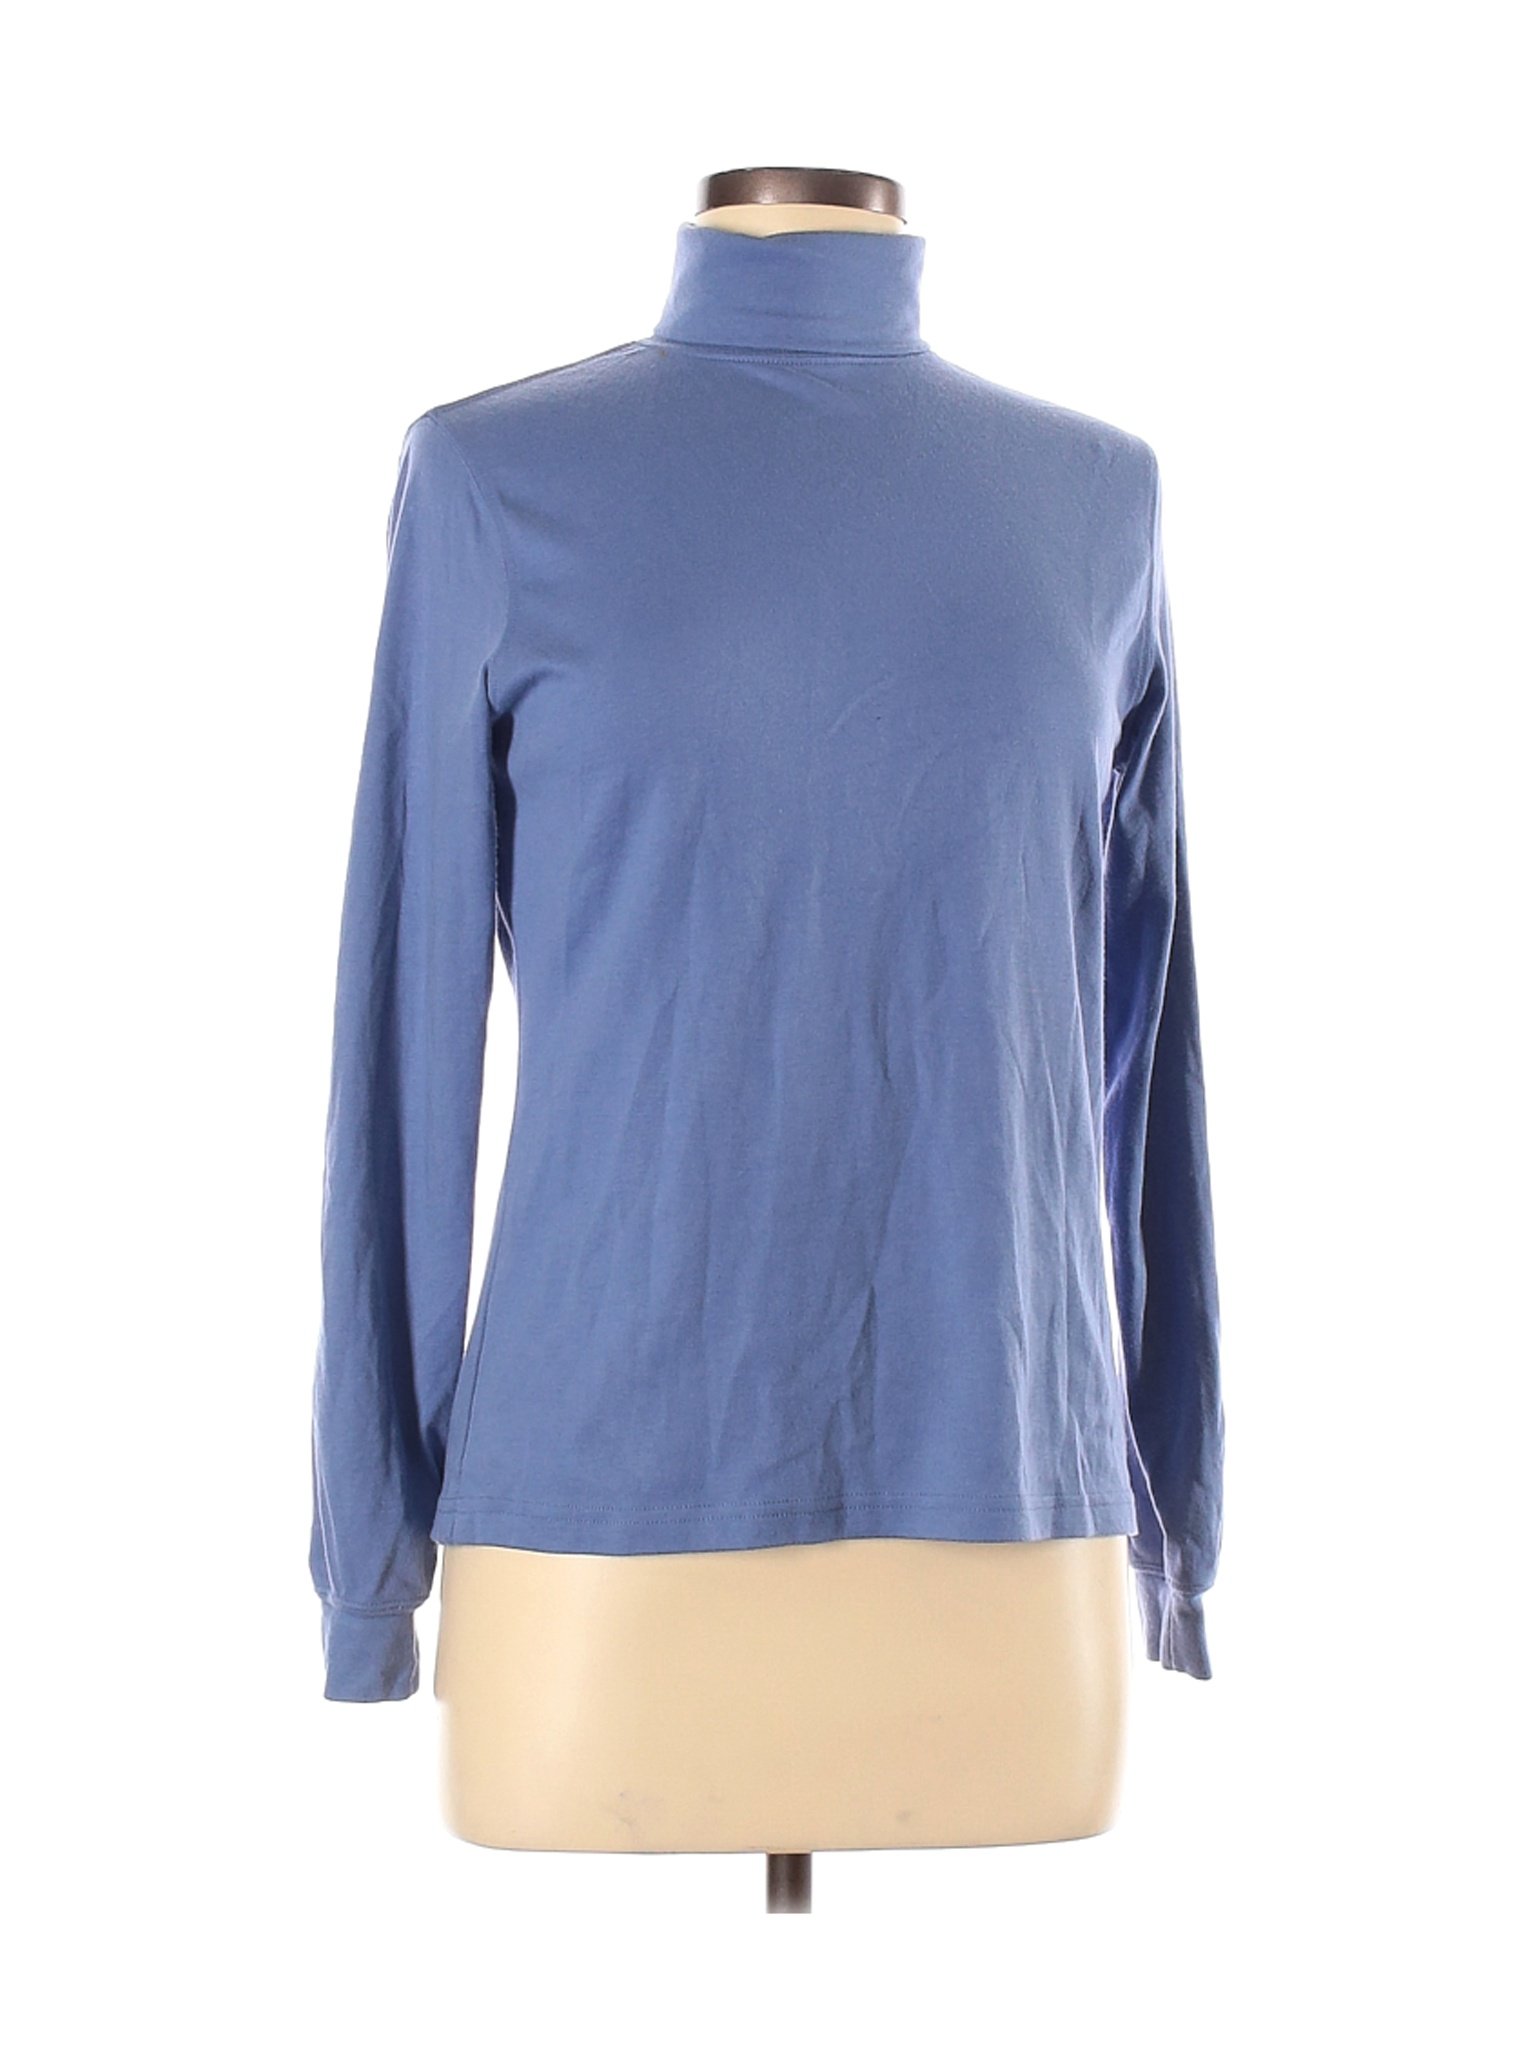 L.L.Bean Women Blue Long Sleeve Turtleneck XS | eBay